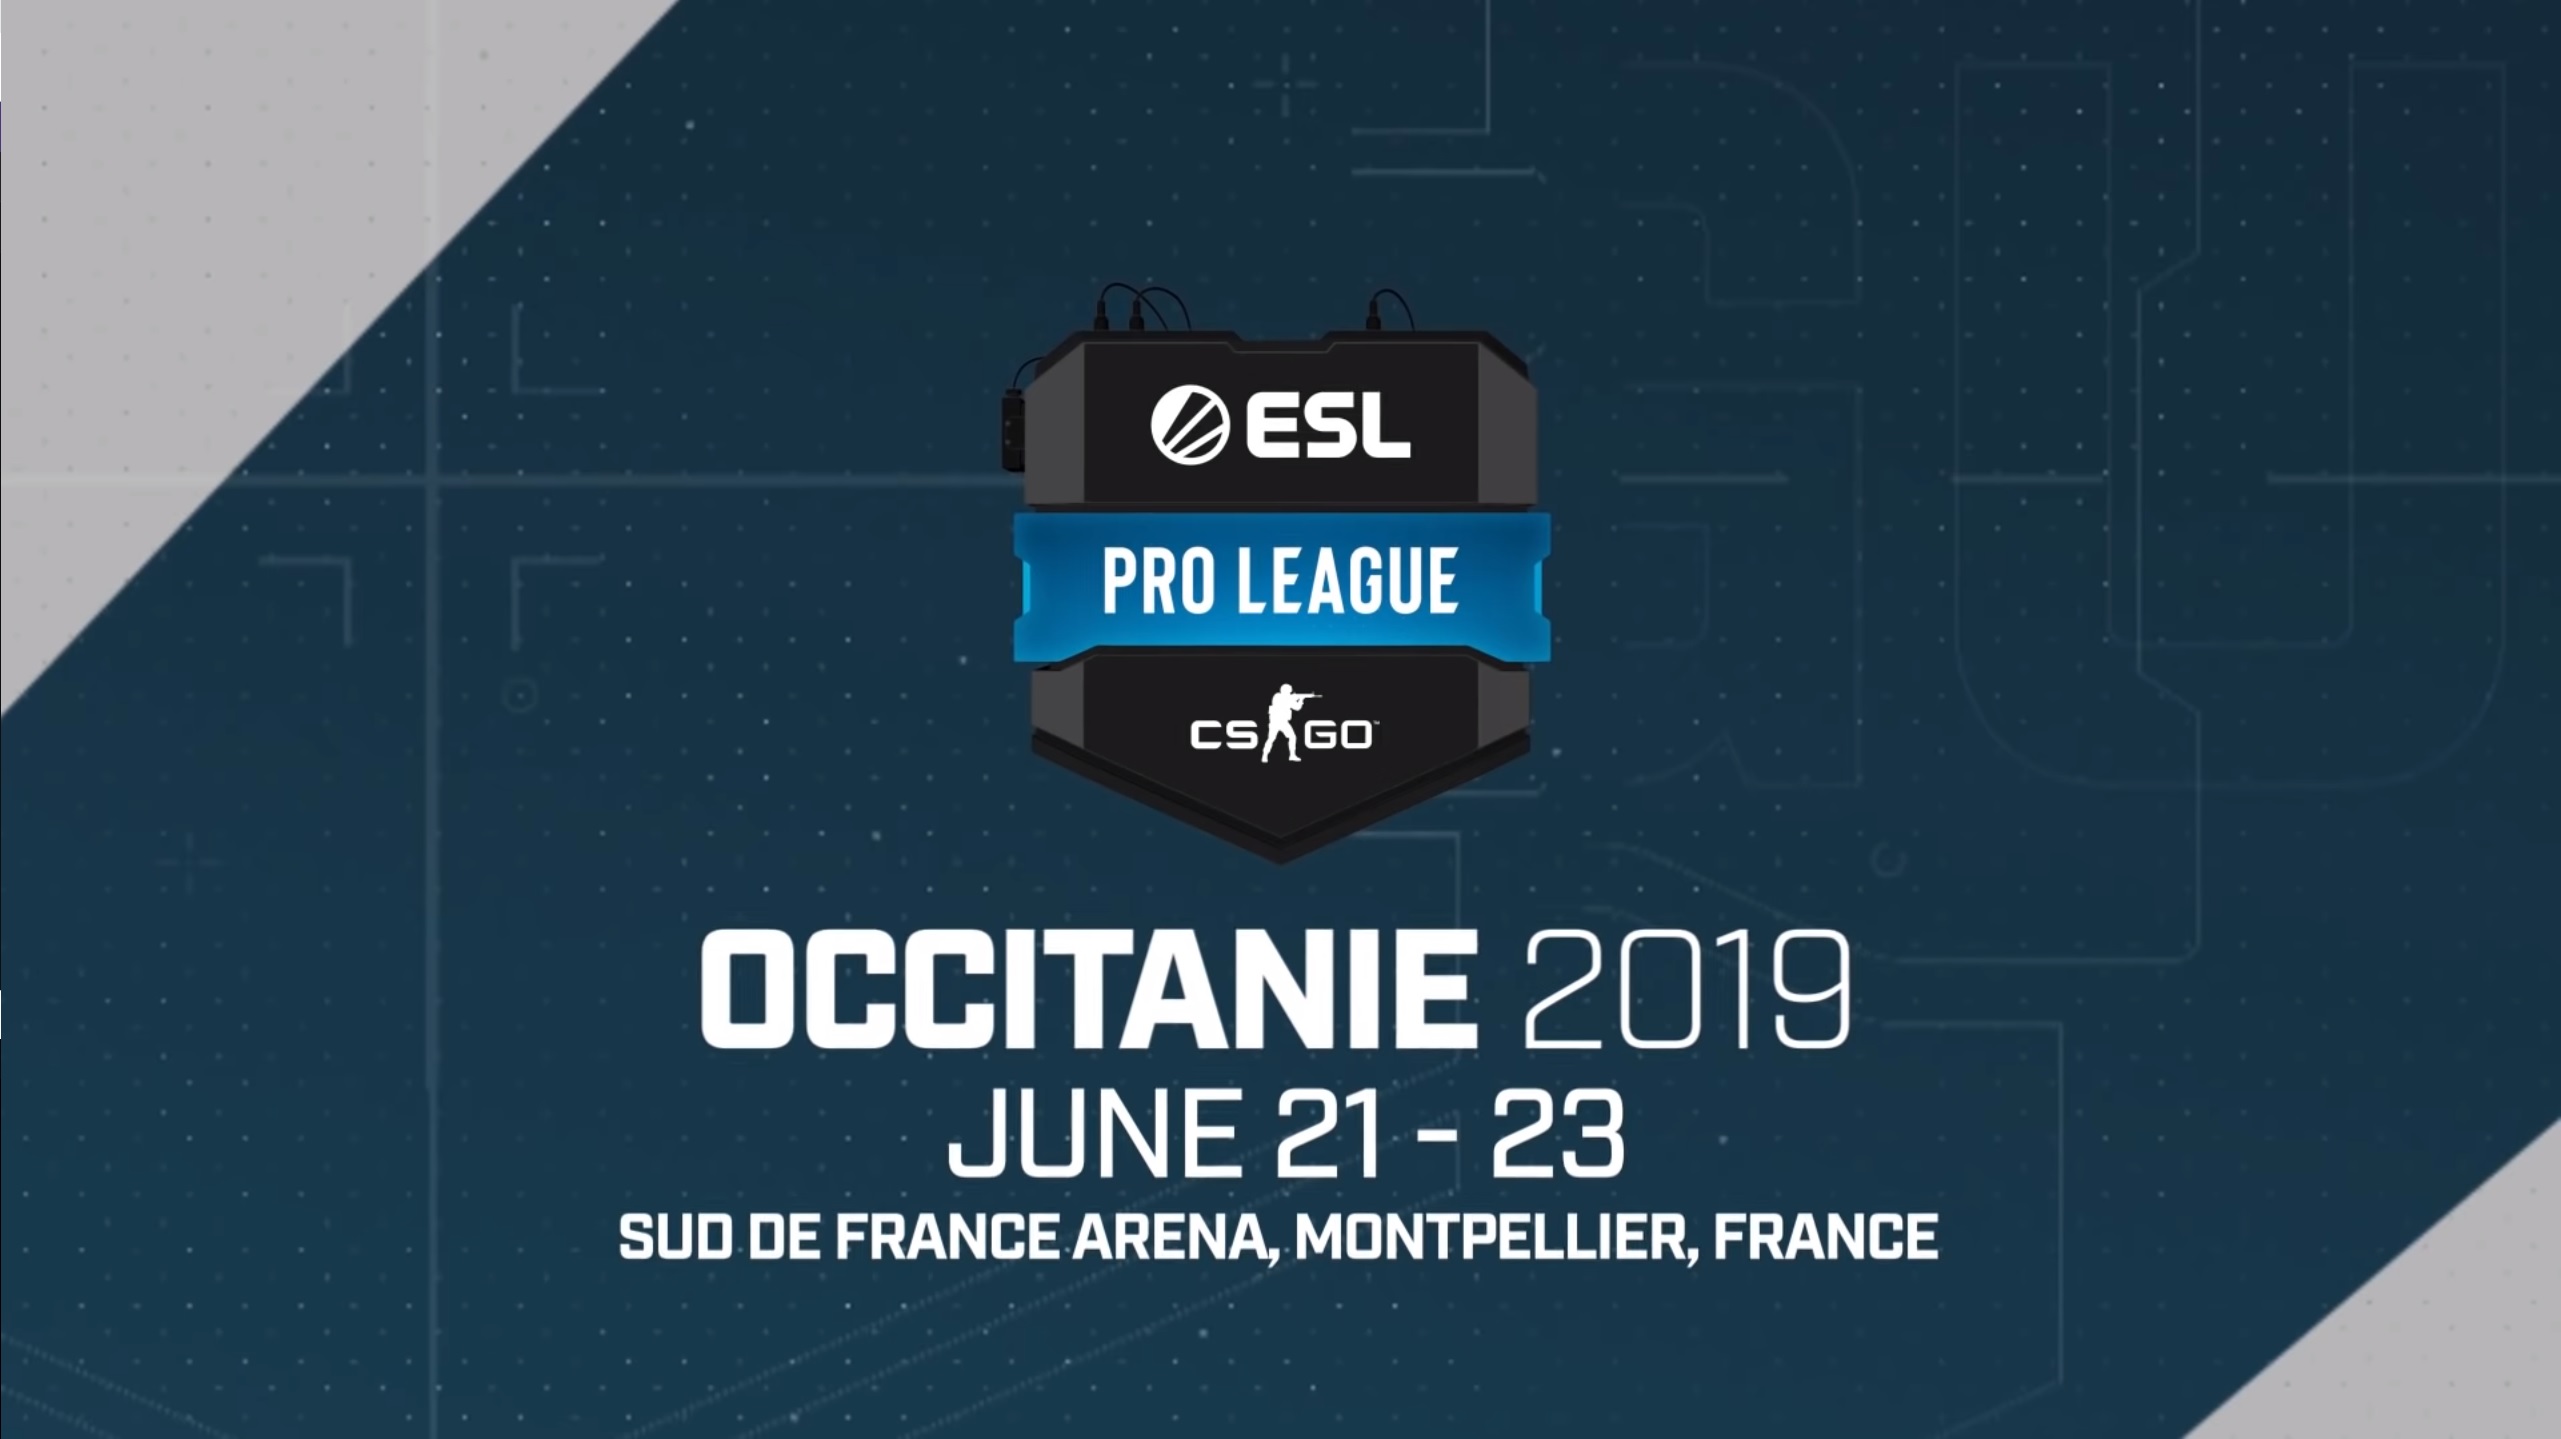 ESL Pro League Finals Occitanie 2019